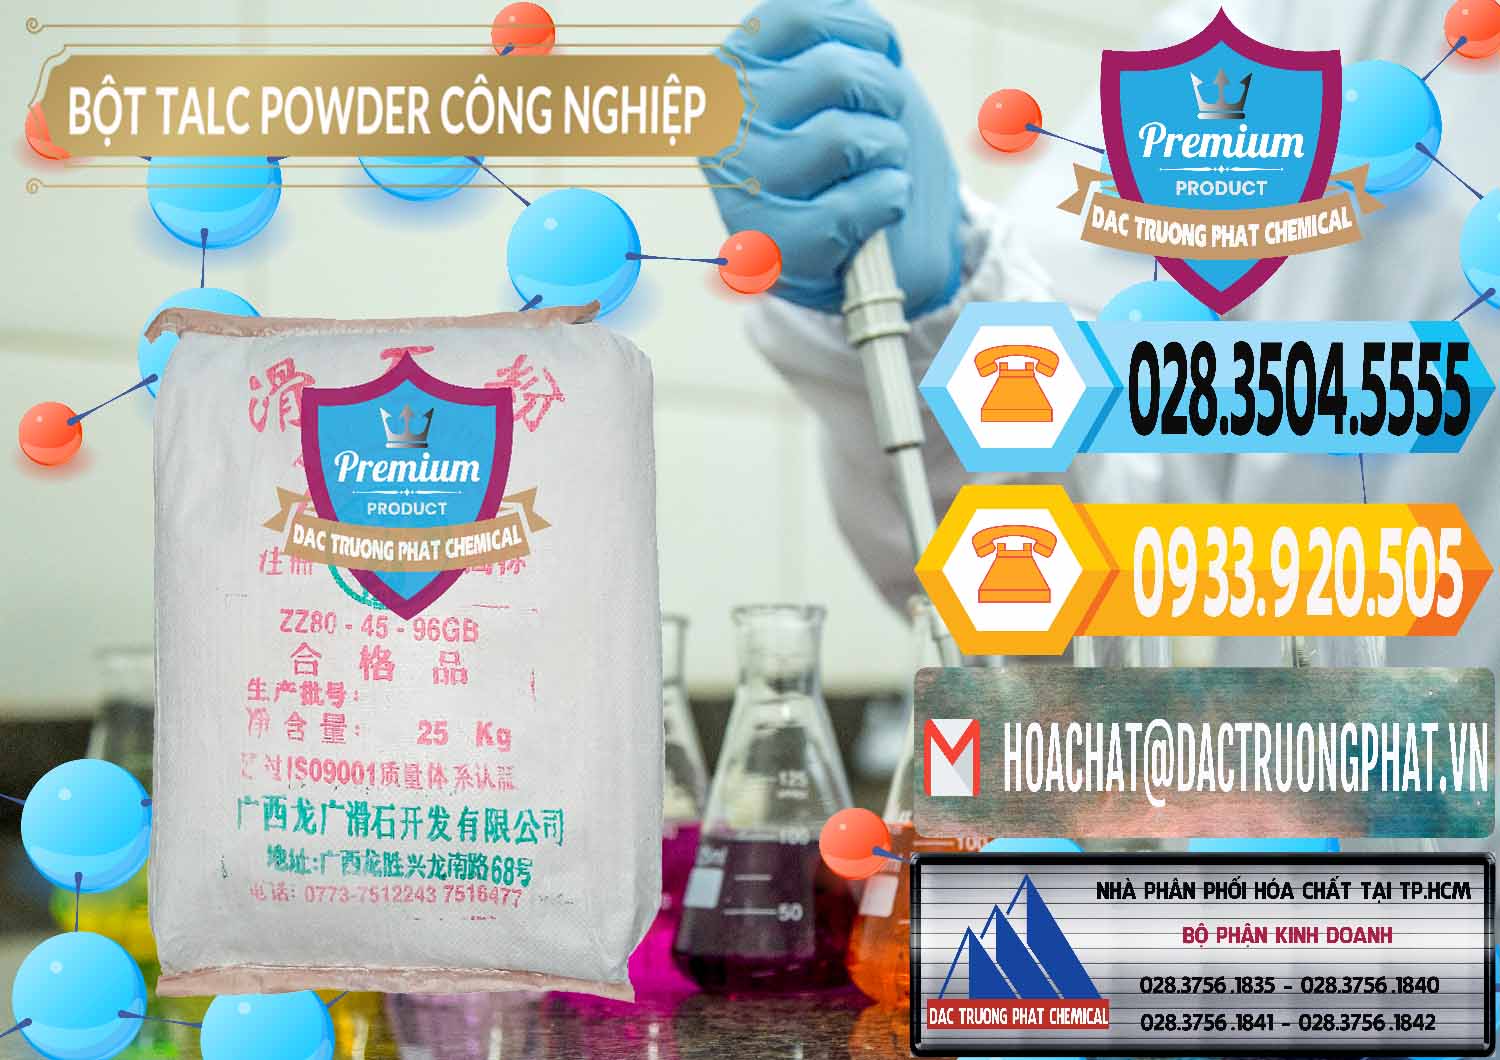 Nhập khẩu và bán Bột Talc Powder Công Nghiệp Trung Quốc China - 0037 - Nhà phân phối ( nhập khẩu ) hóa chất tại TP.HCM - hoachattayrua.net